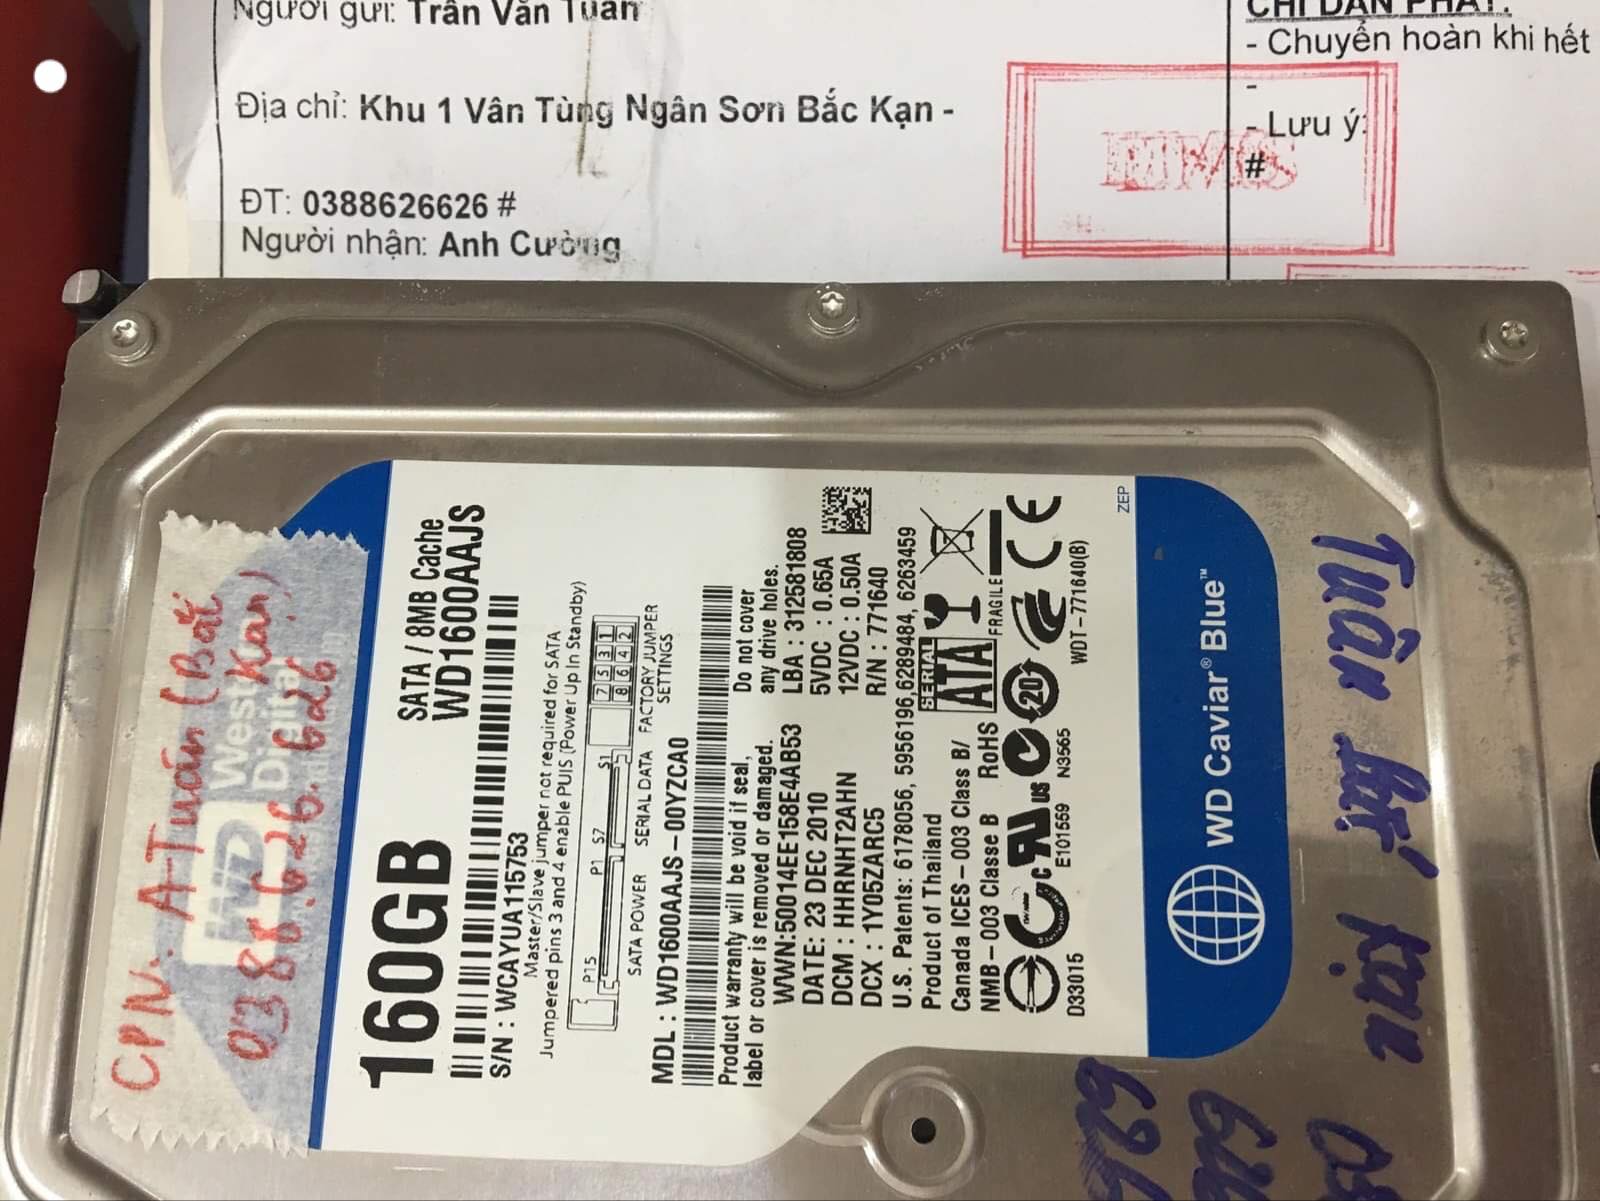 Cứu dữ liệu ổ cứng Western 160GB không nhận tại Bắc Kạn 24/06/2019 - cuumaytinh